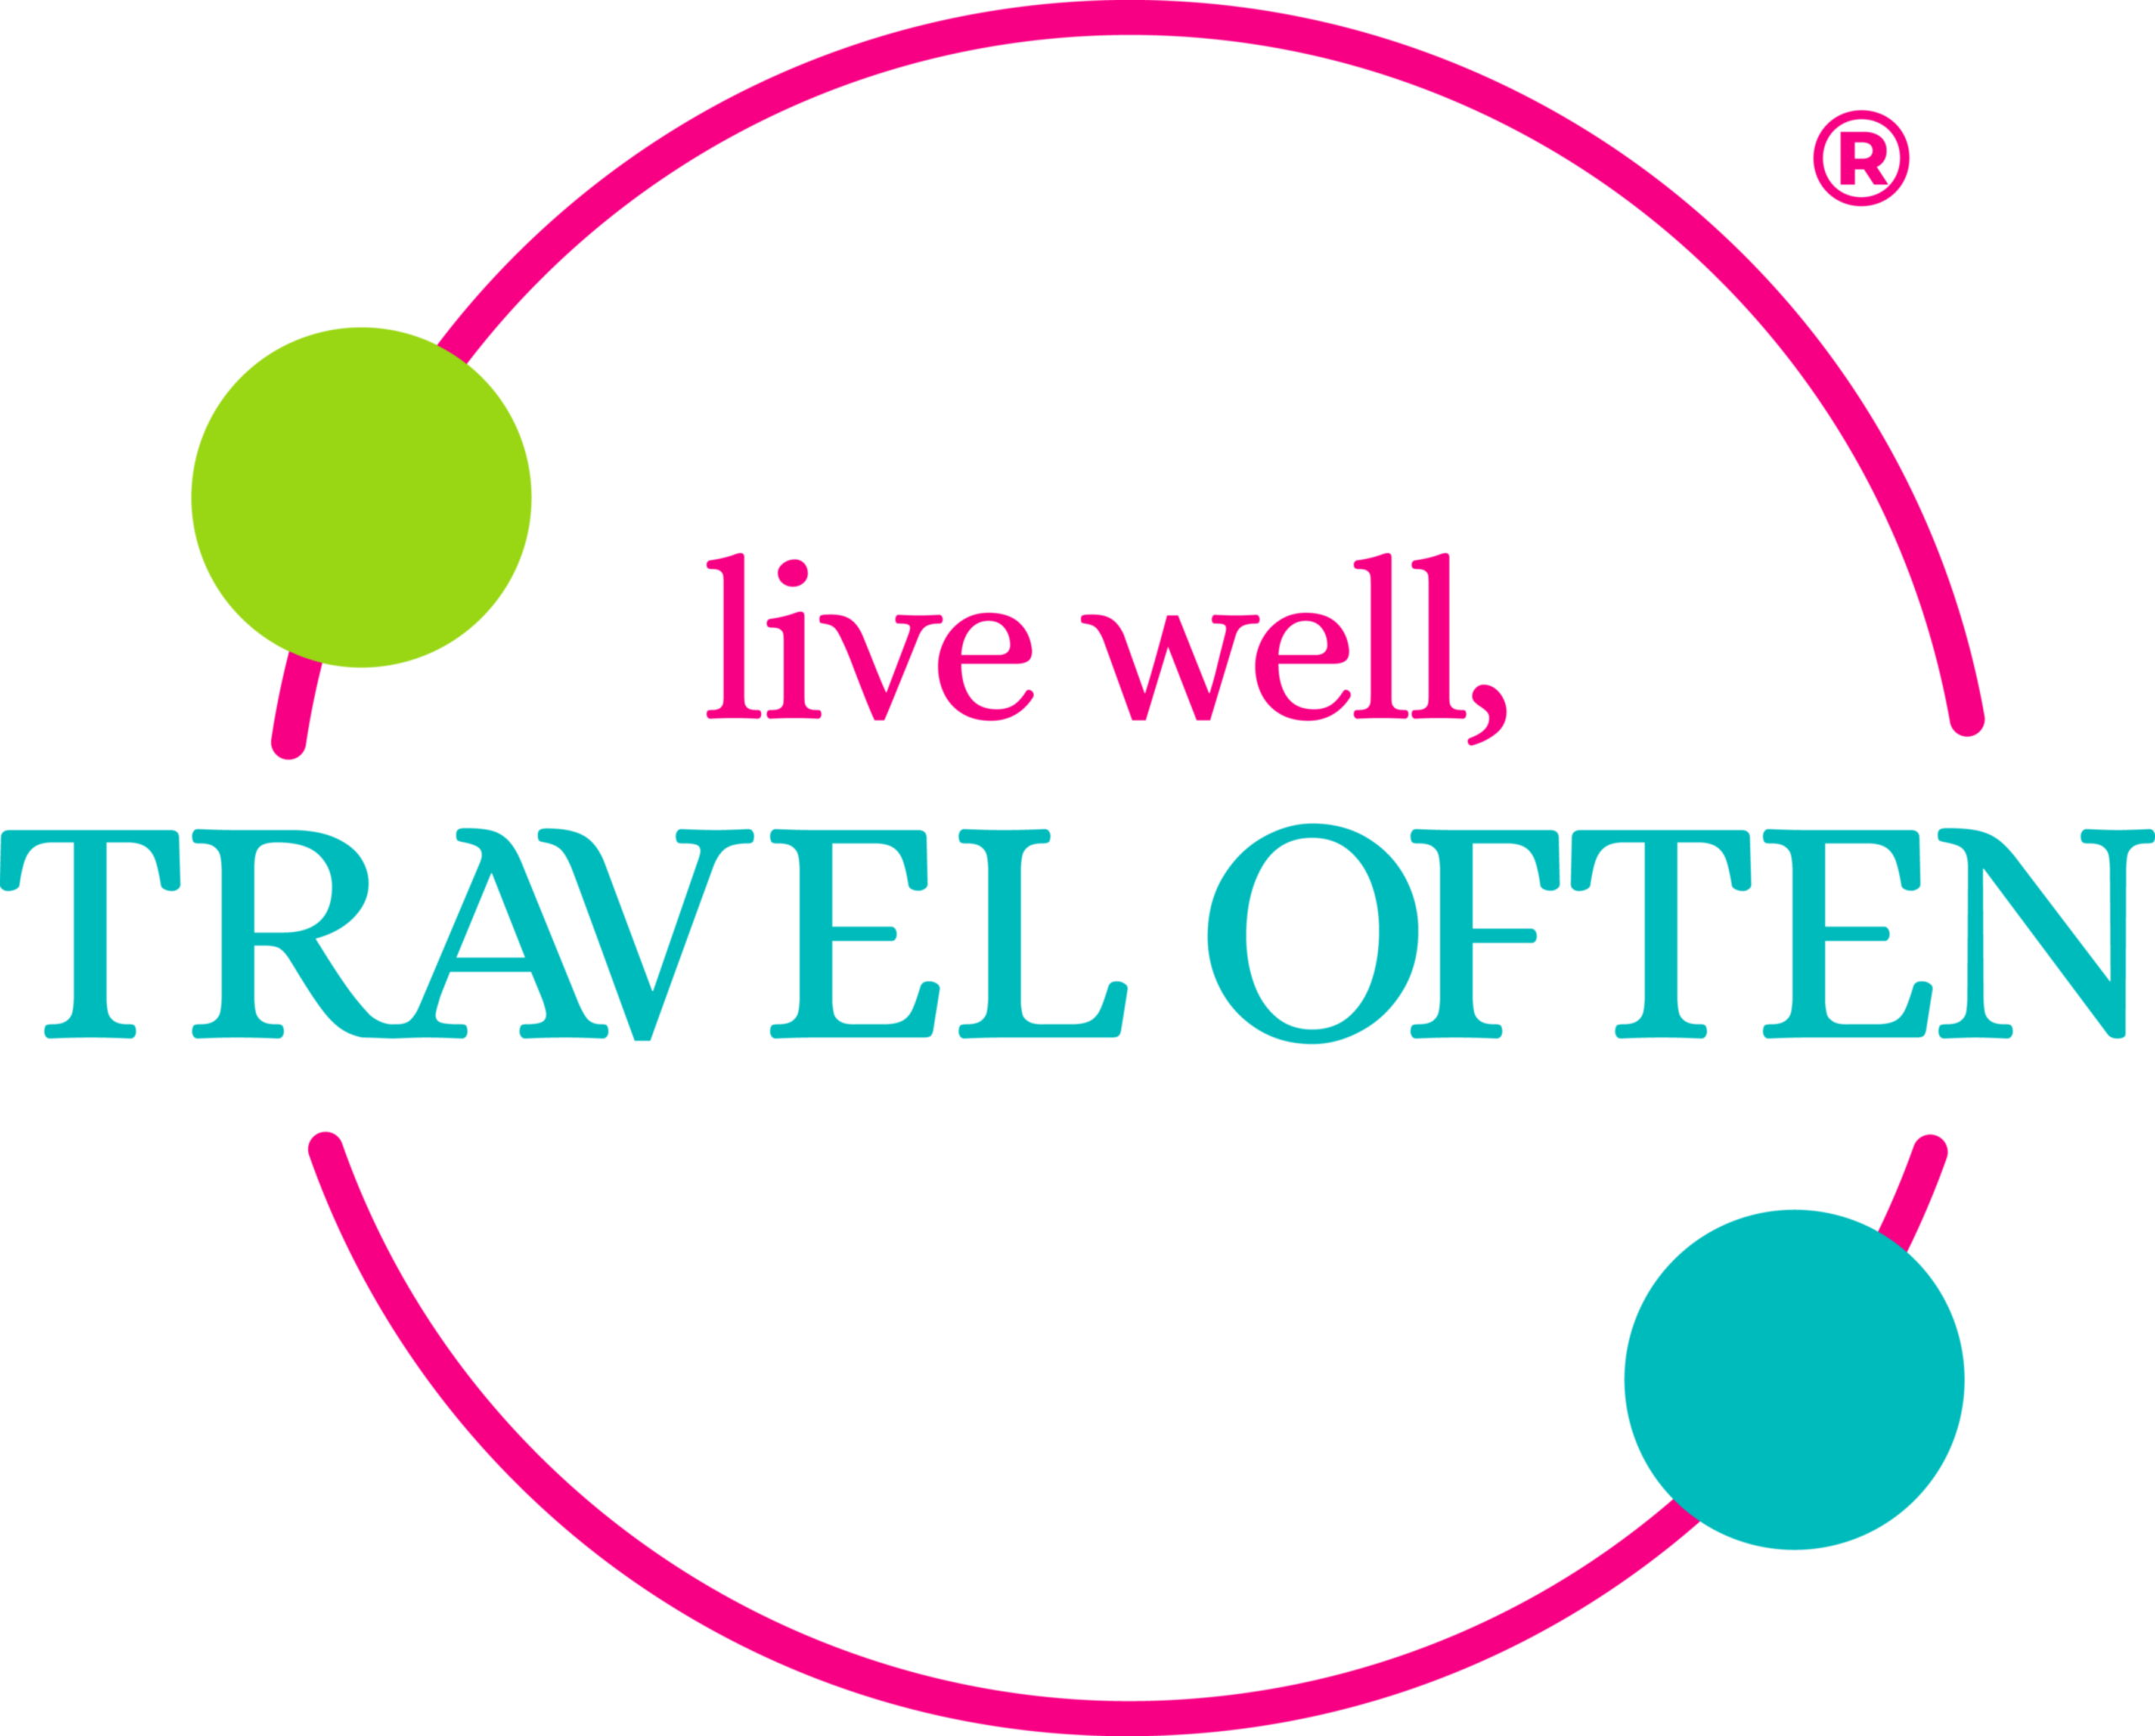 Live Well, Travel Often